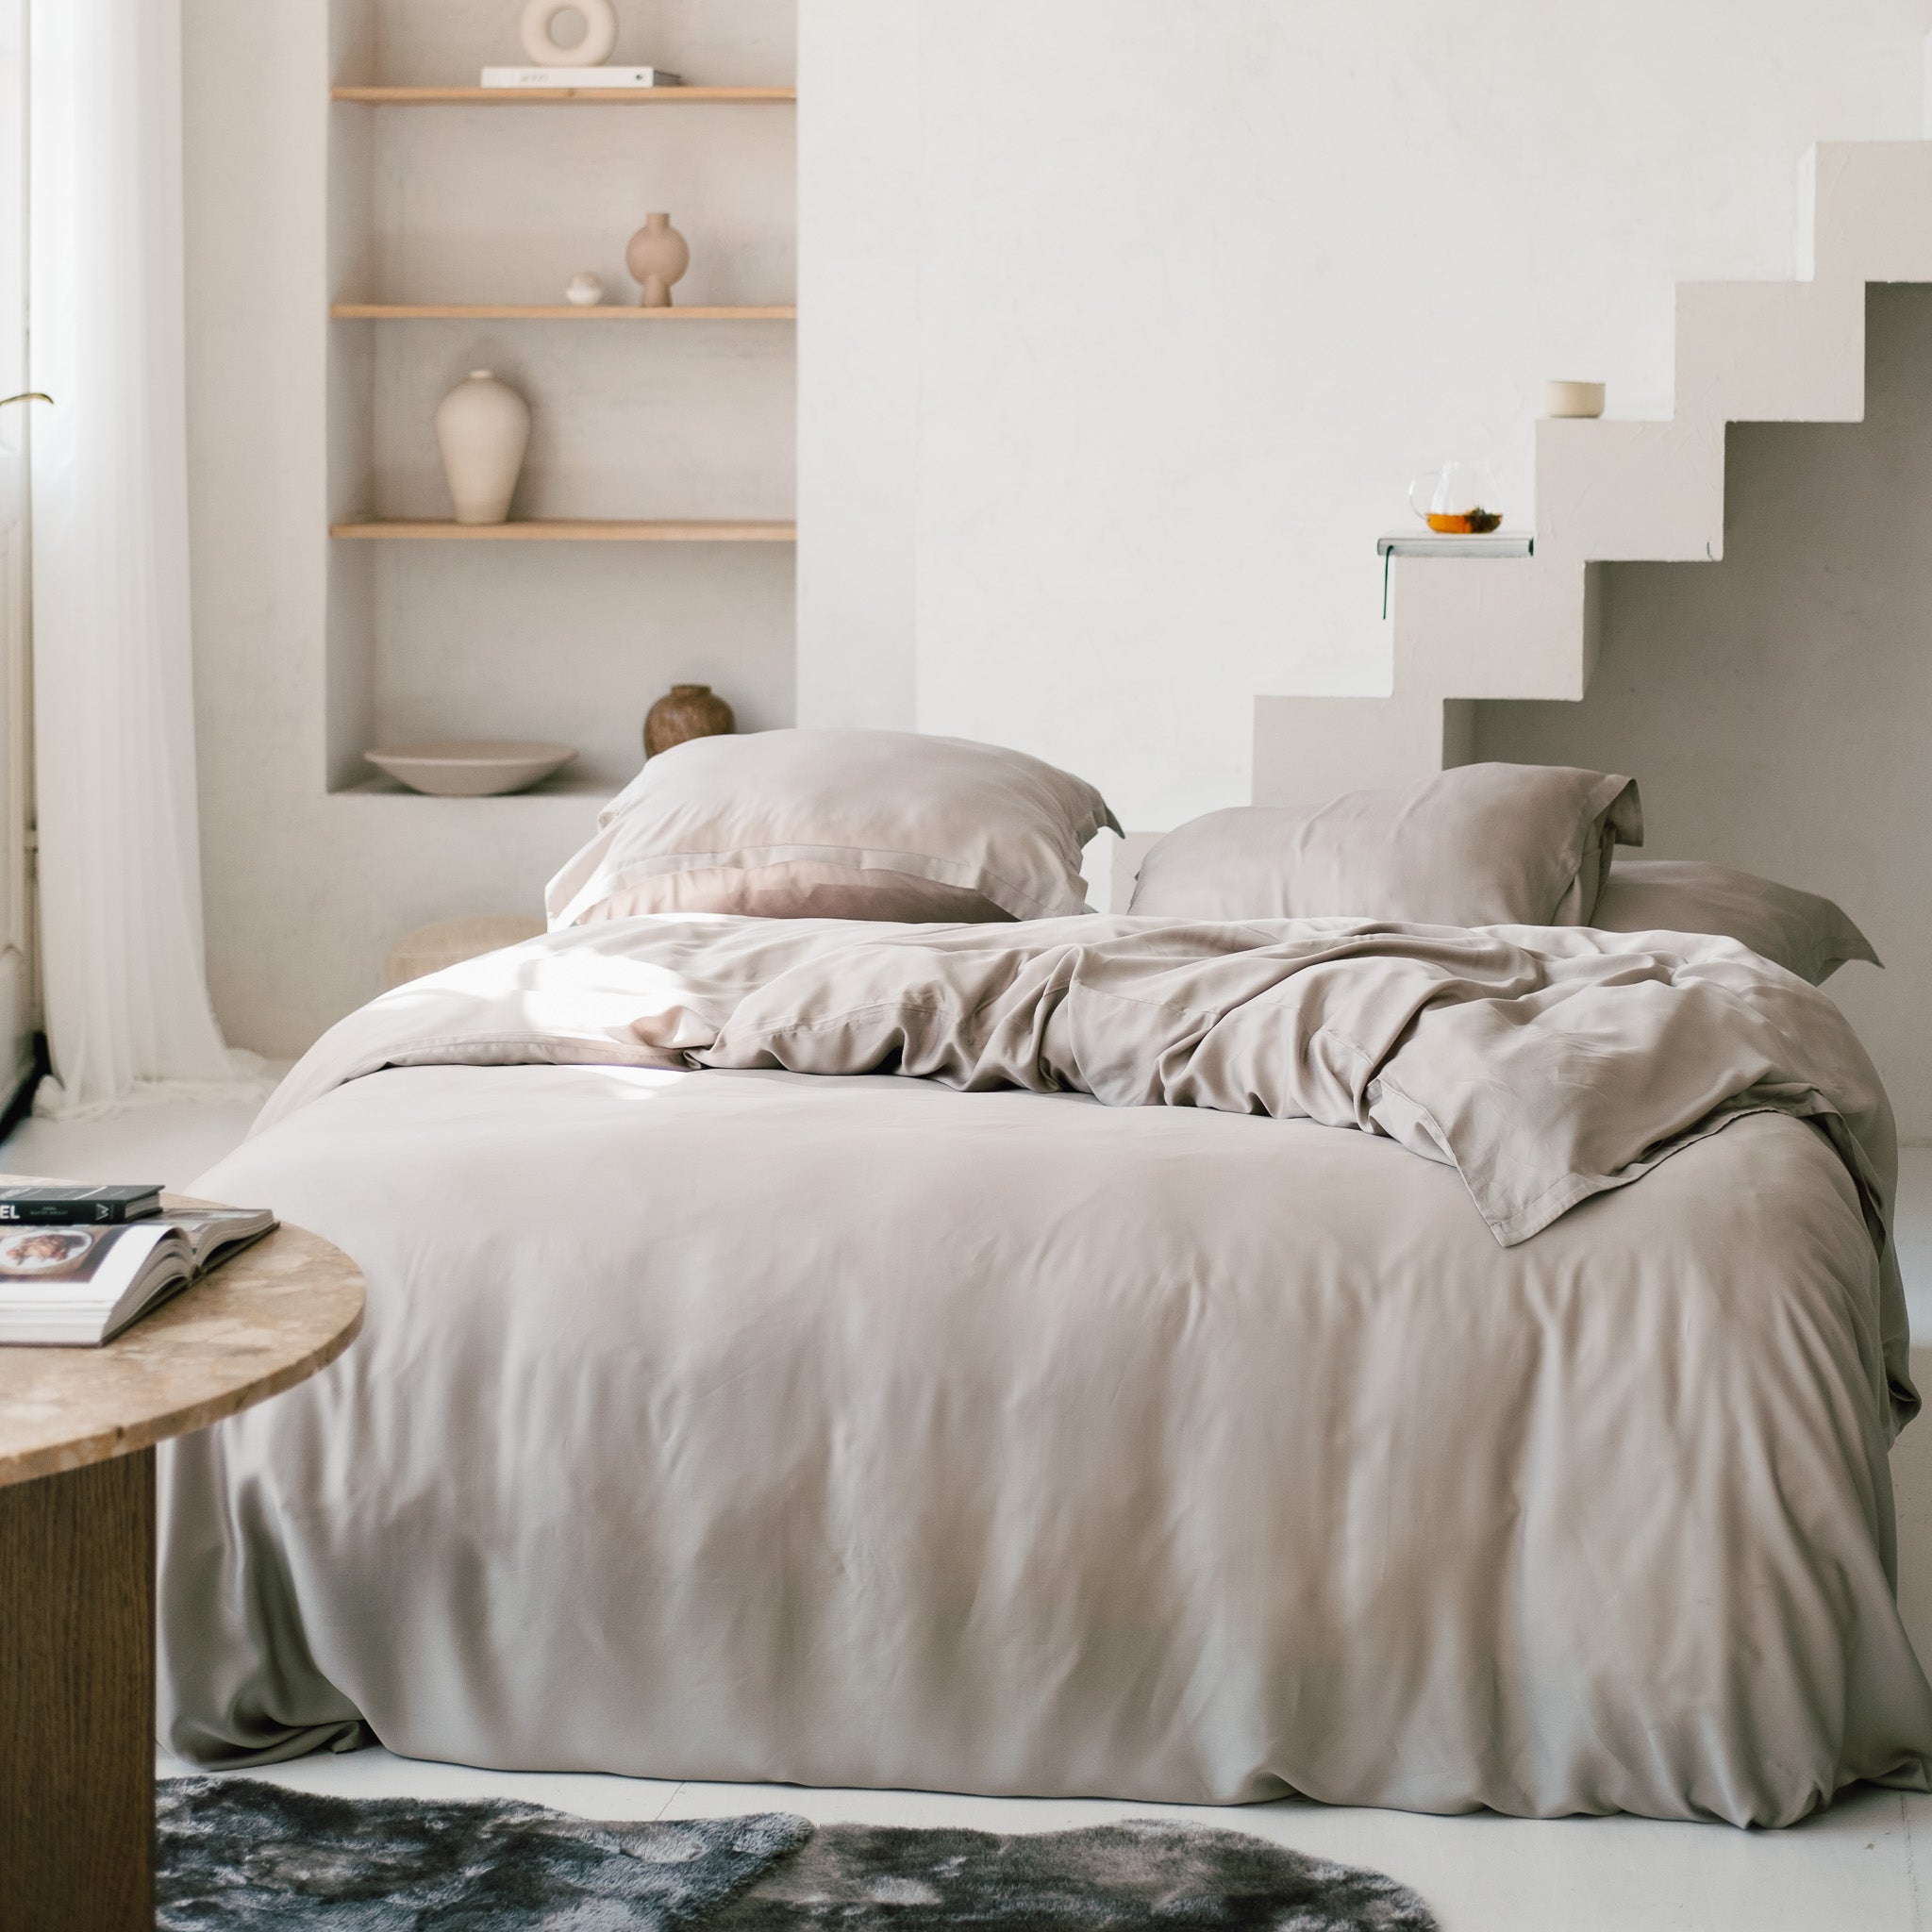 Slaapkamer met opgemaakt bed met dekbedovertrek in de kleur taupe gemaakt van de stof Tencel 